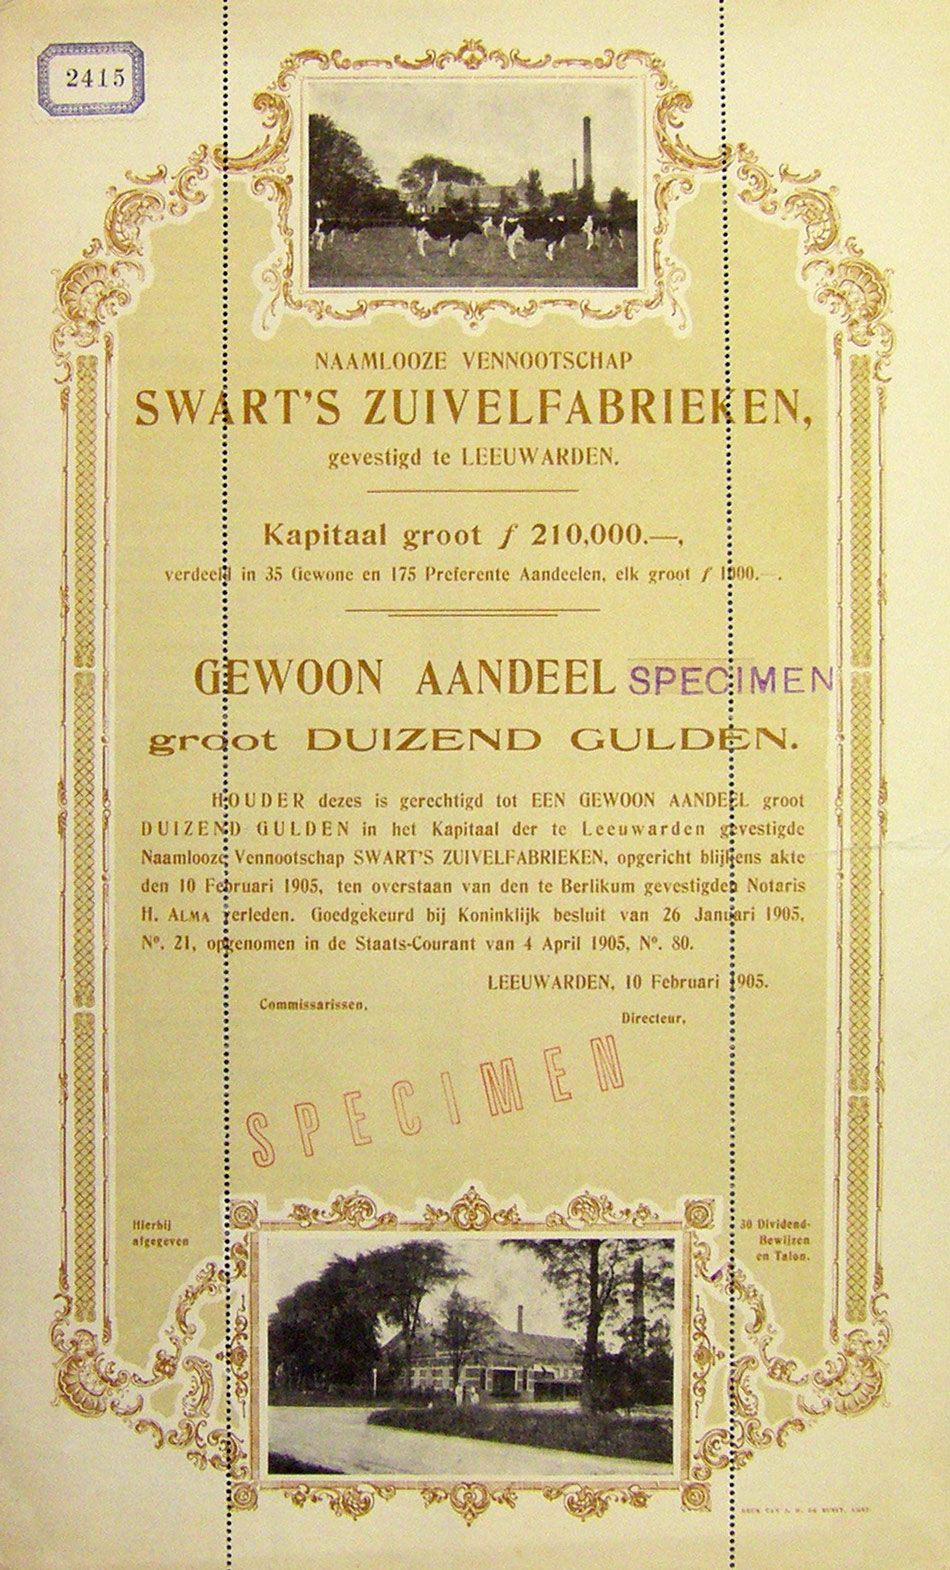 Specimen-aandeel van Swart's zuivelfabrieken te Leeuwarden